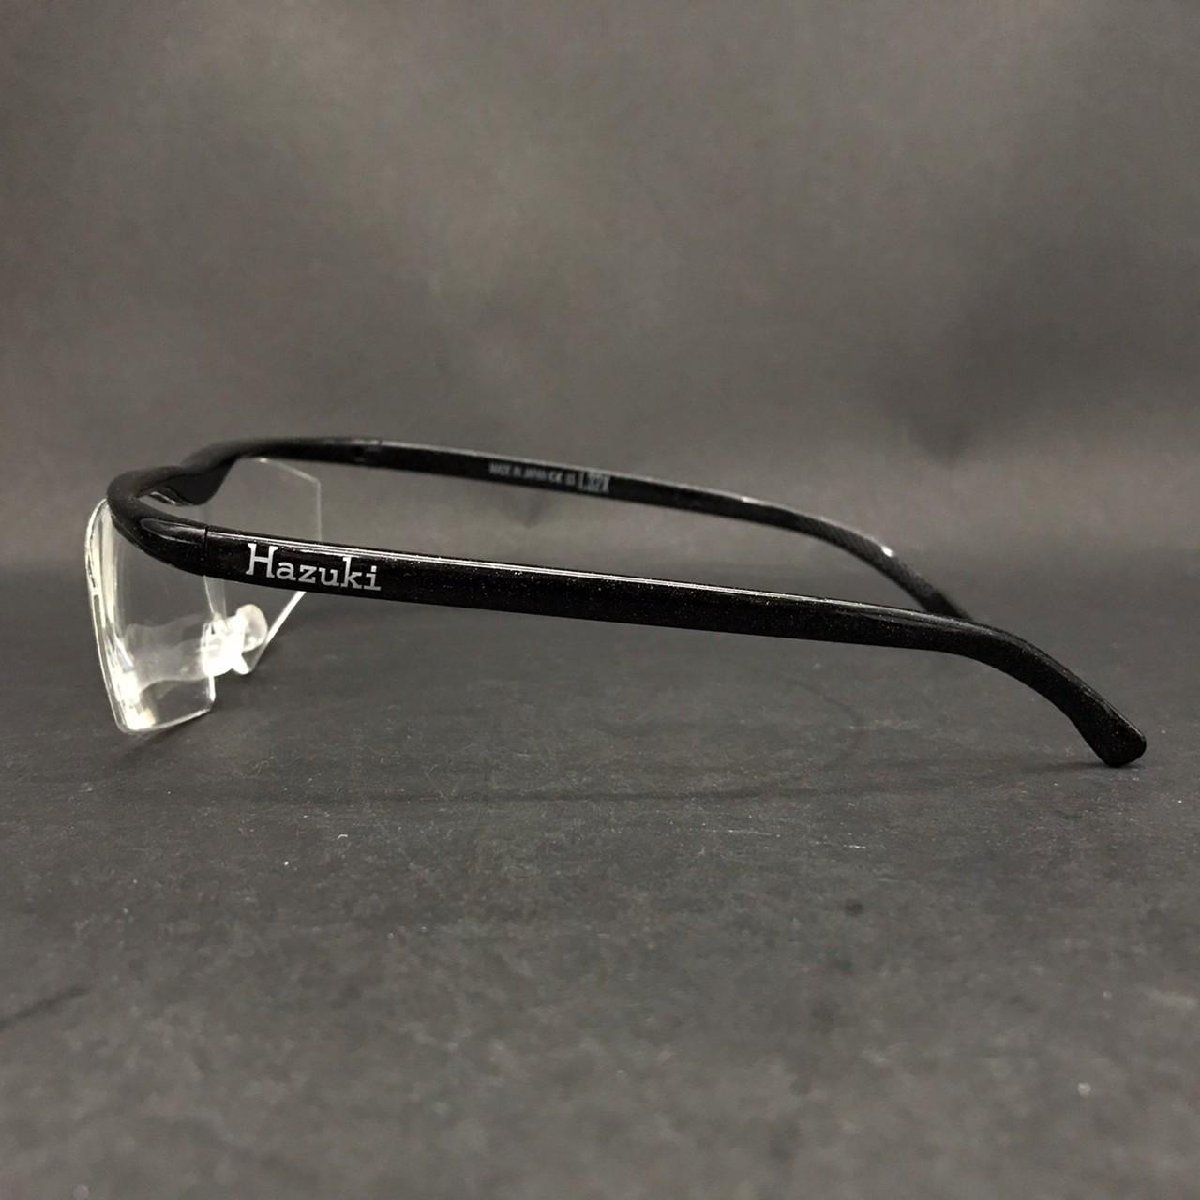 FG0721-8-3 Hazuki ハズキルーペ LS 1.32X ブラック 眼鏡タイプ クリアレンズ 拡大鏡 老眼鏡 めがね 日本製 60サイズ_画像4